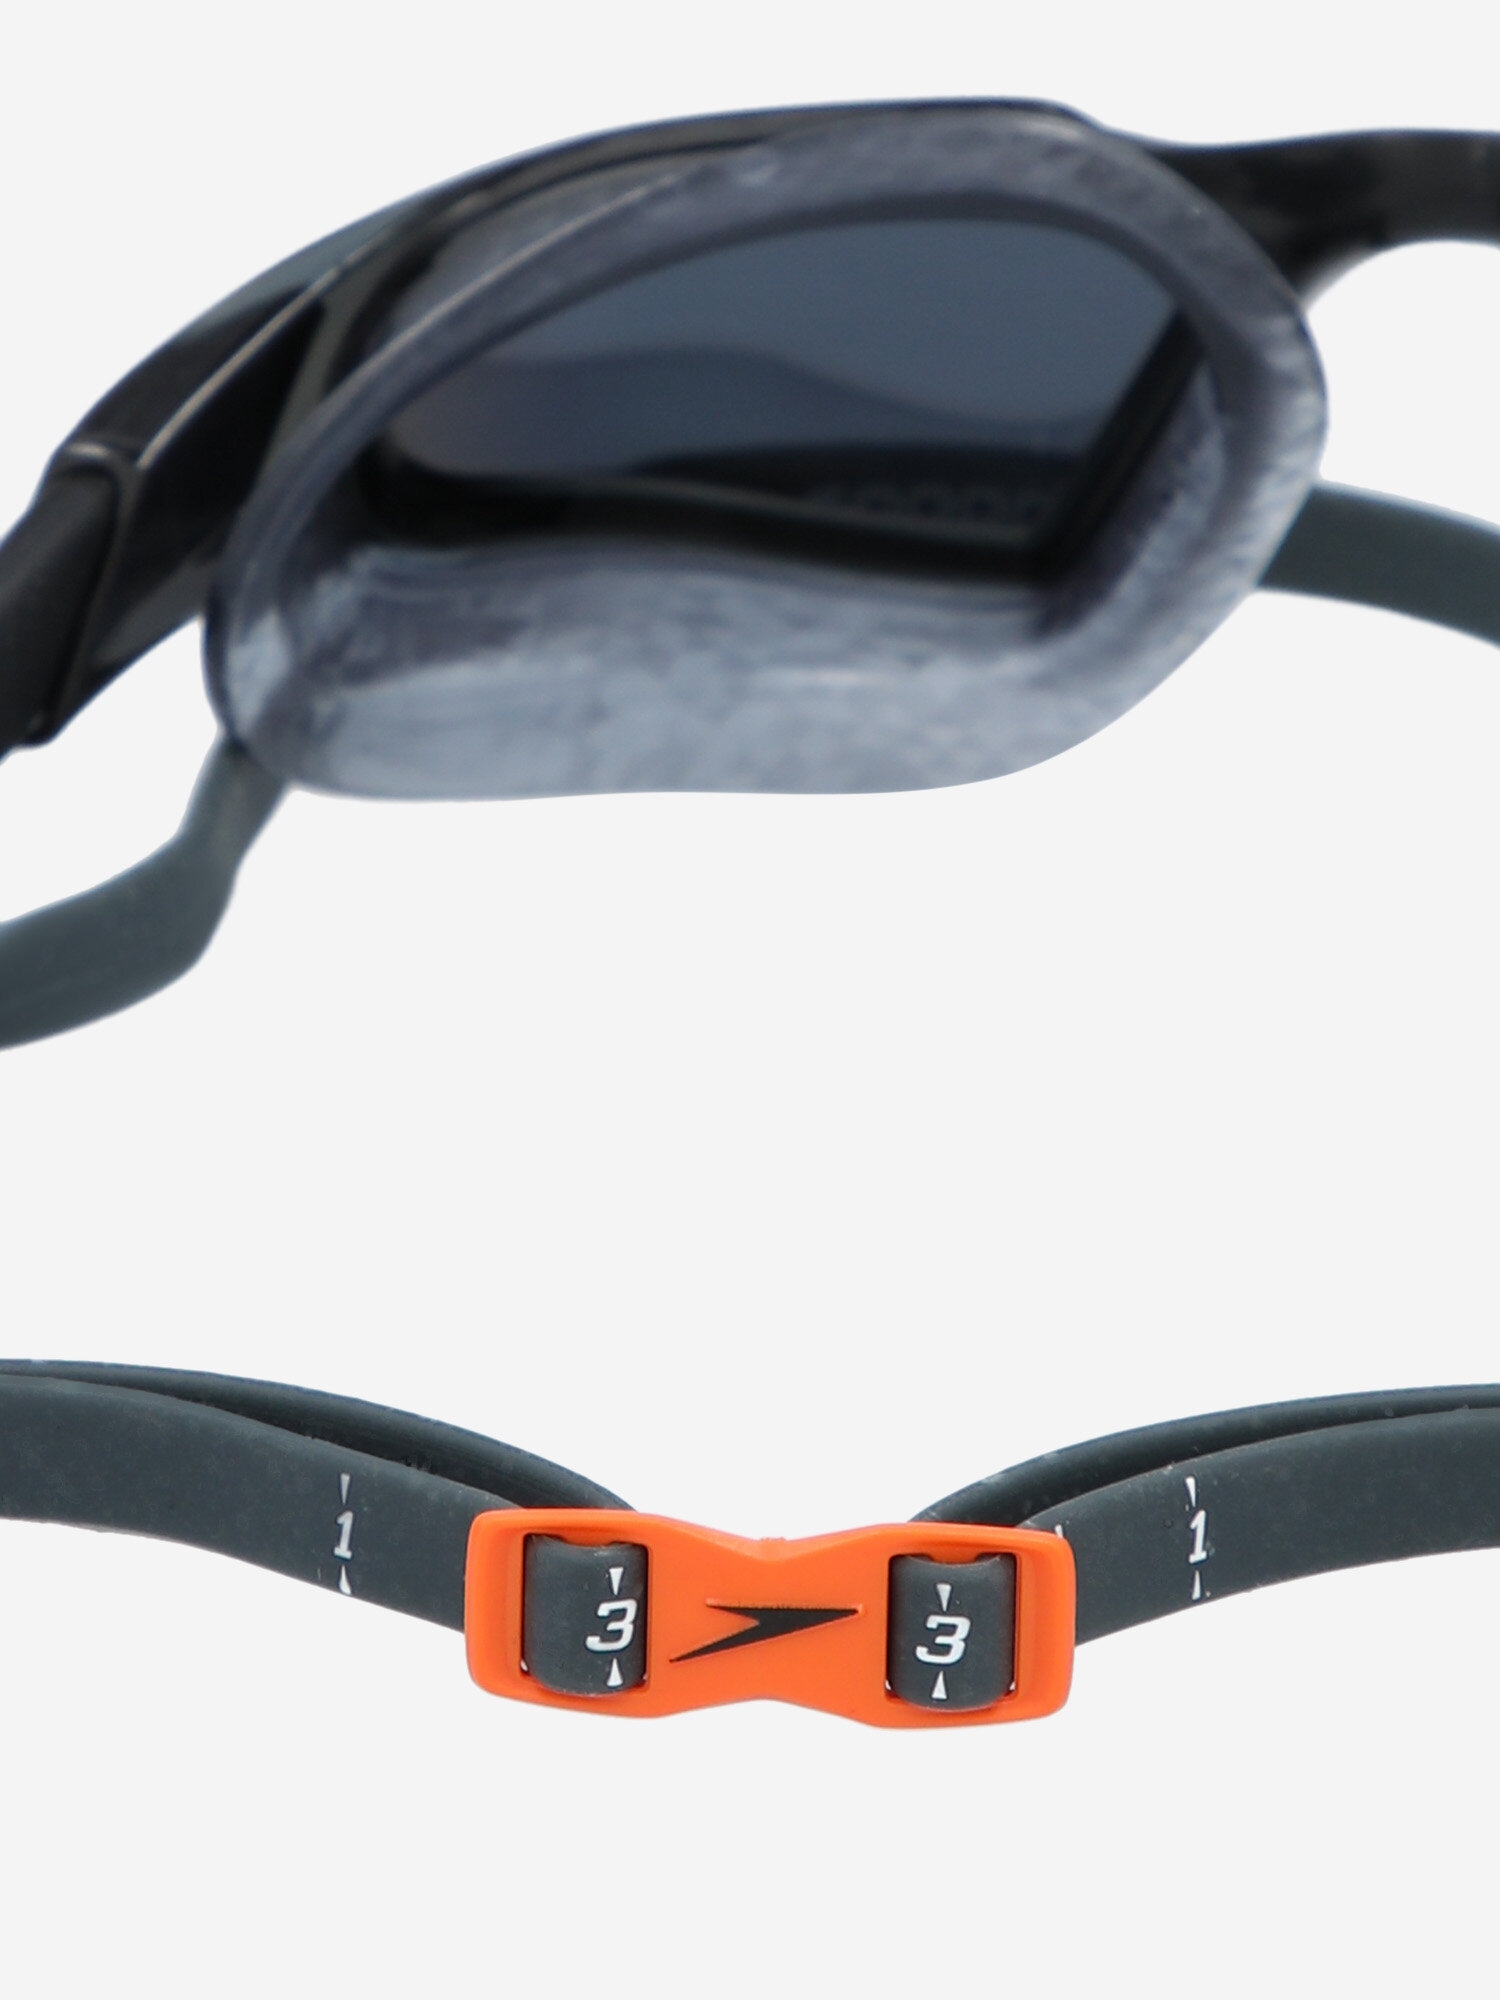 Очки для плавания Speedo Aquapulse Pro Черный; RU: Б/р, Ориг: One Size